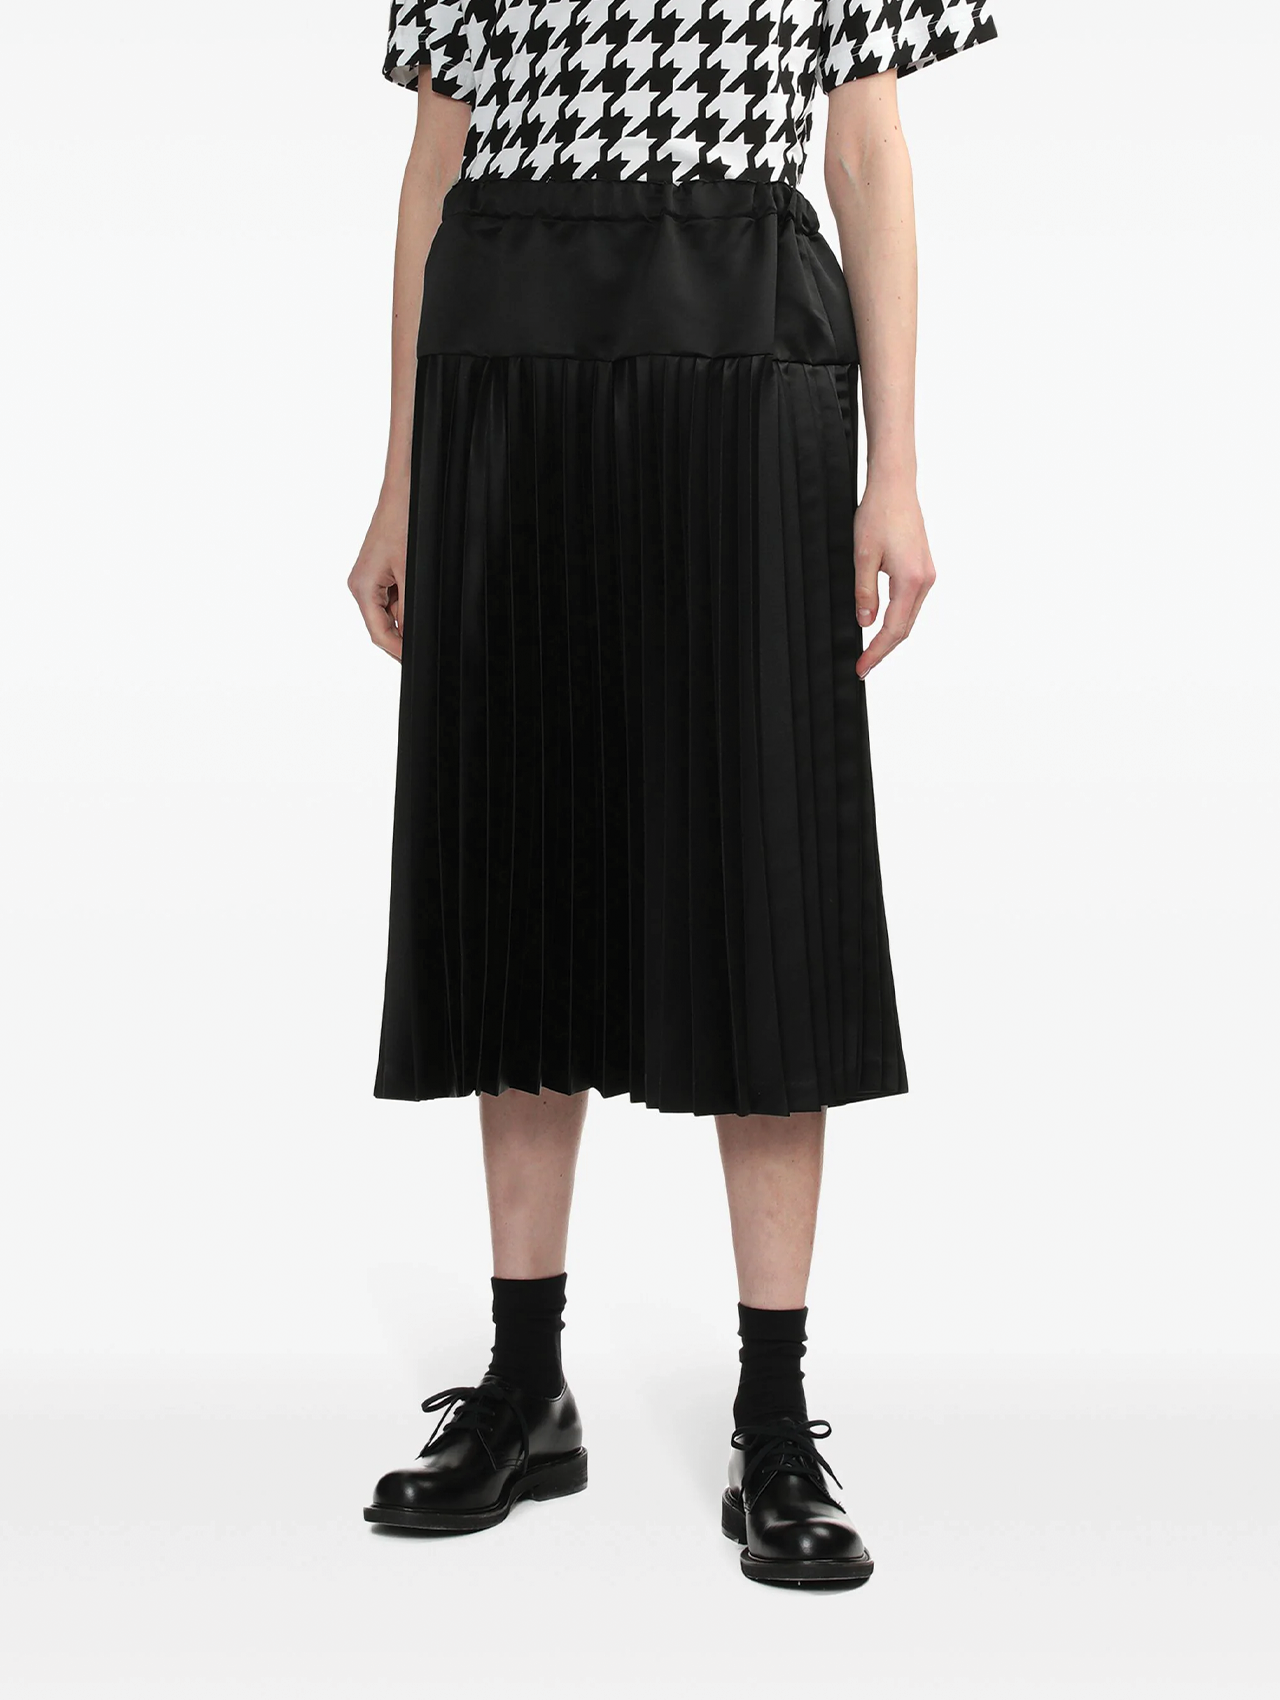 CDG CDG Black Satin Pleated Skirt